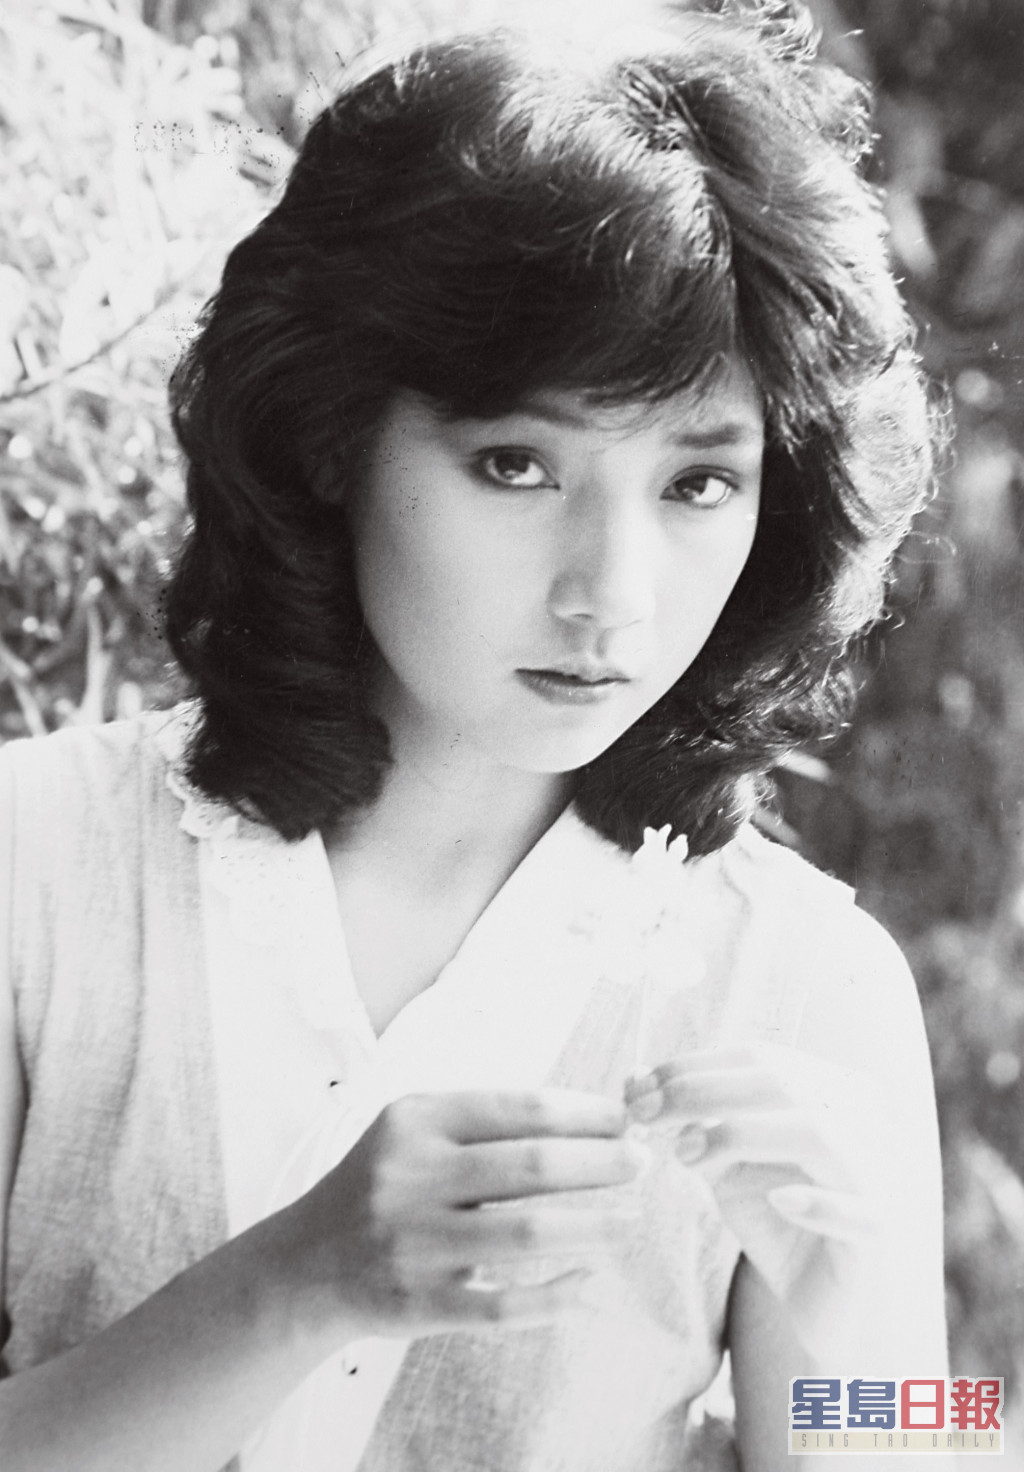 戚美珍1980年参加无綫电视艺员训练班第10期艺员训练班。